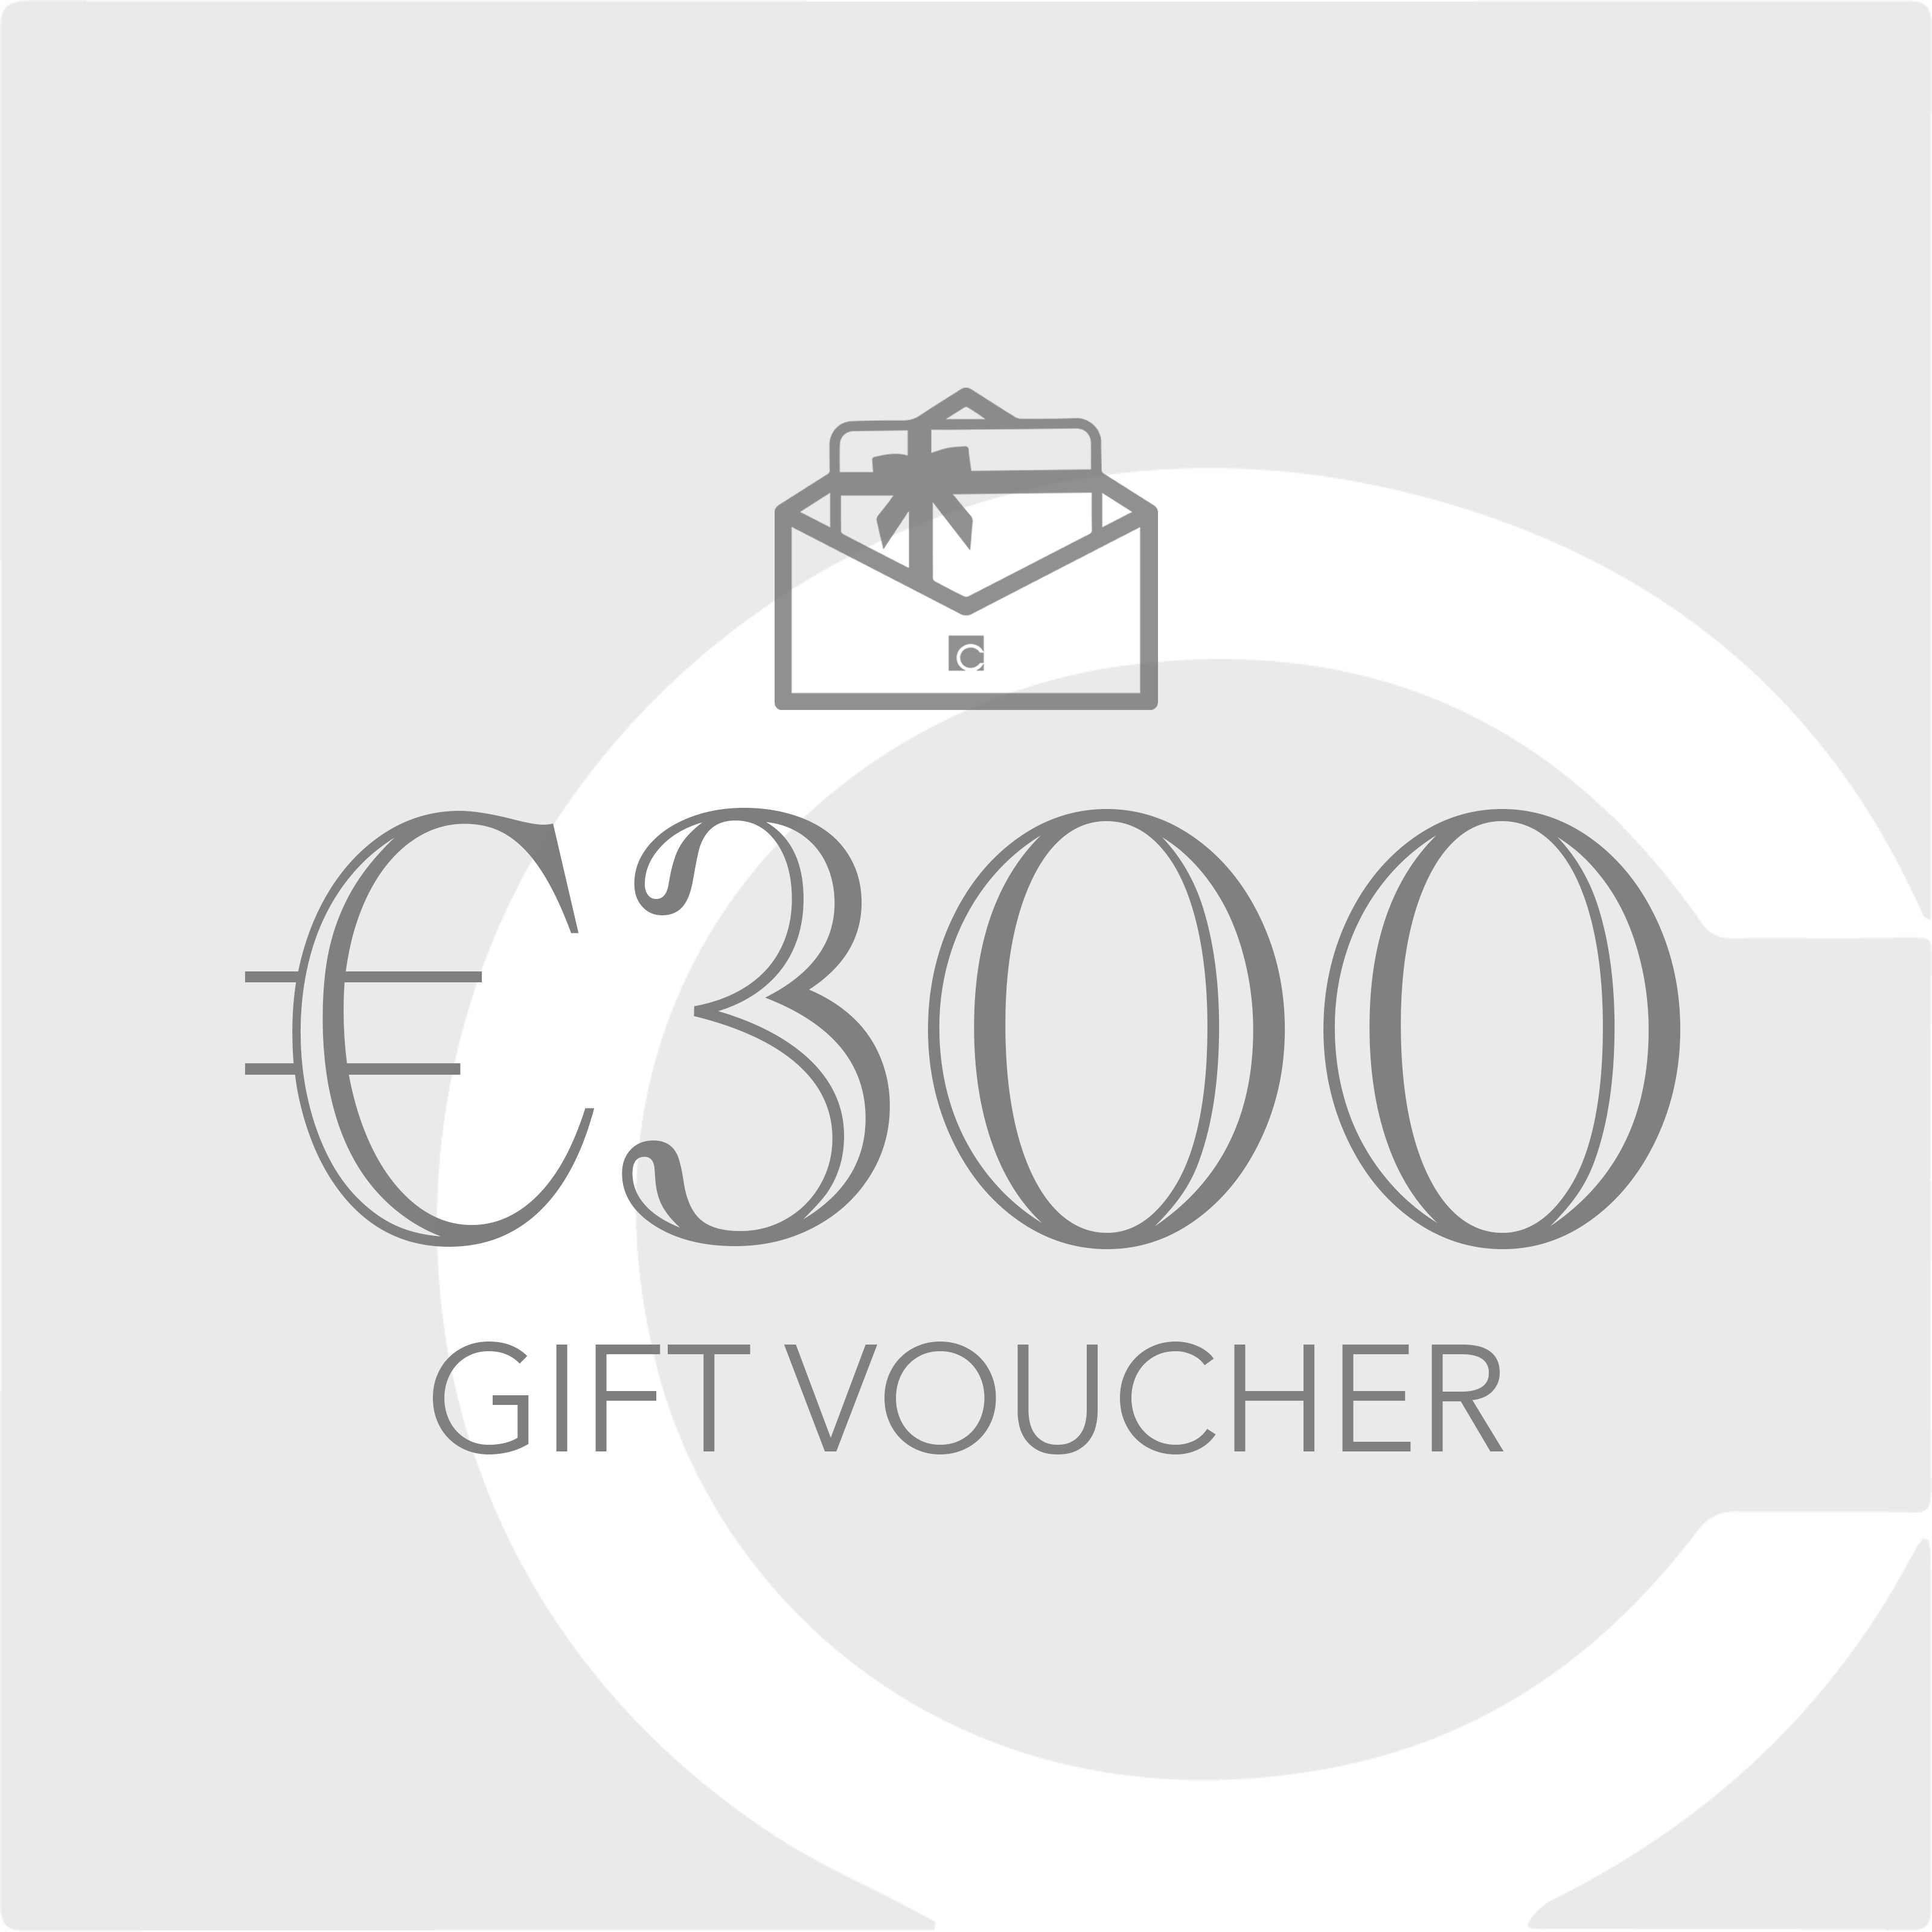 €300 Gift Voucher